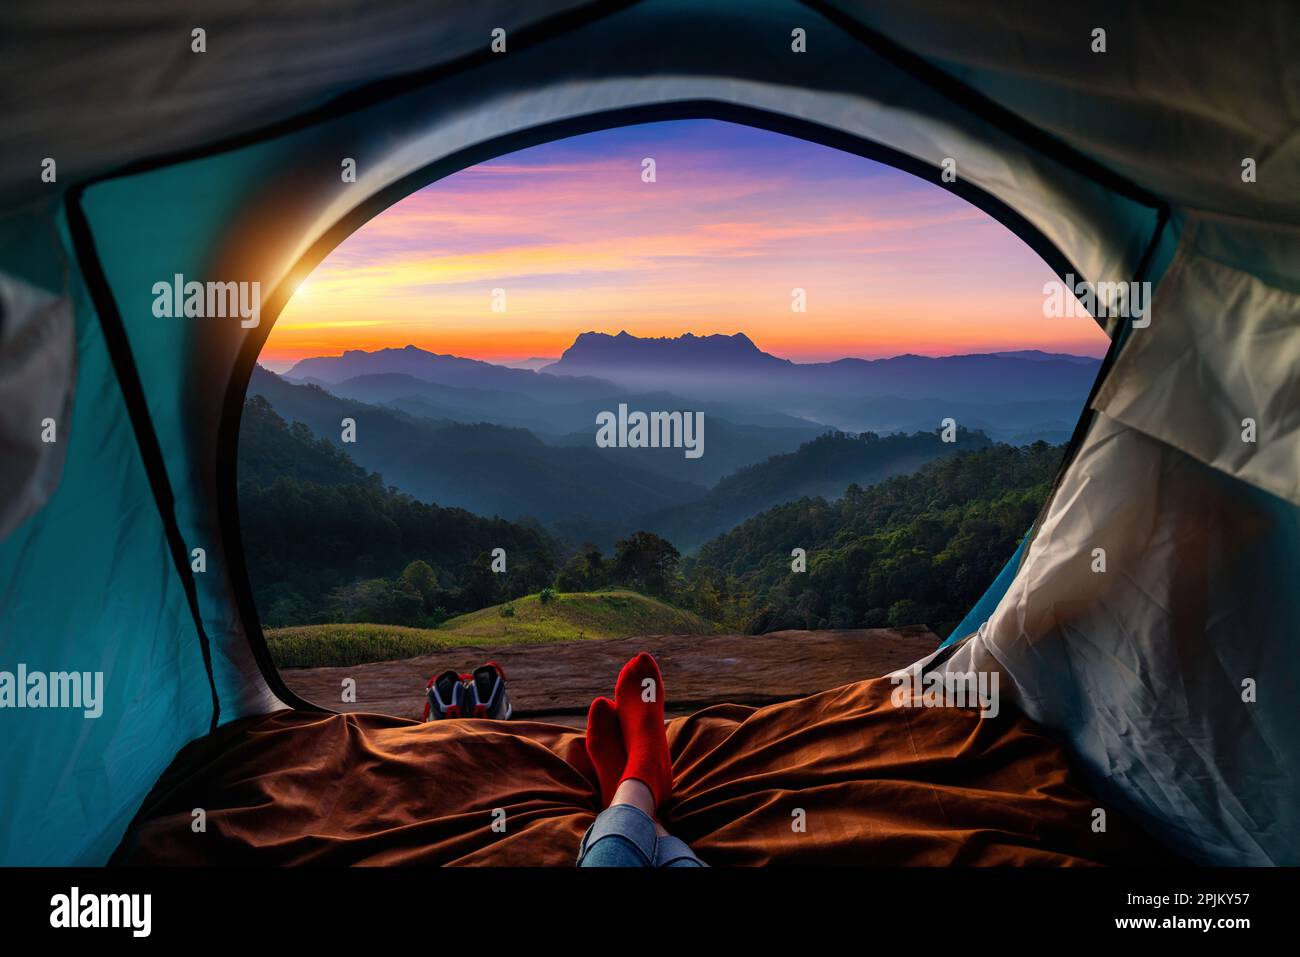 Frau überquert Bein auf Decke im Campingzelt mit Schlafsäcken auf Bergsteigen. Blick von innen auf die Berge von Doi luang chiang dao. Stockfoto